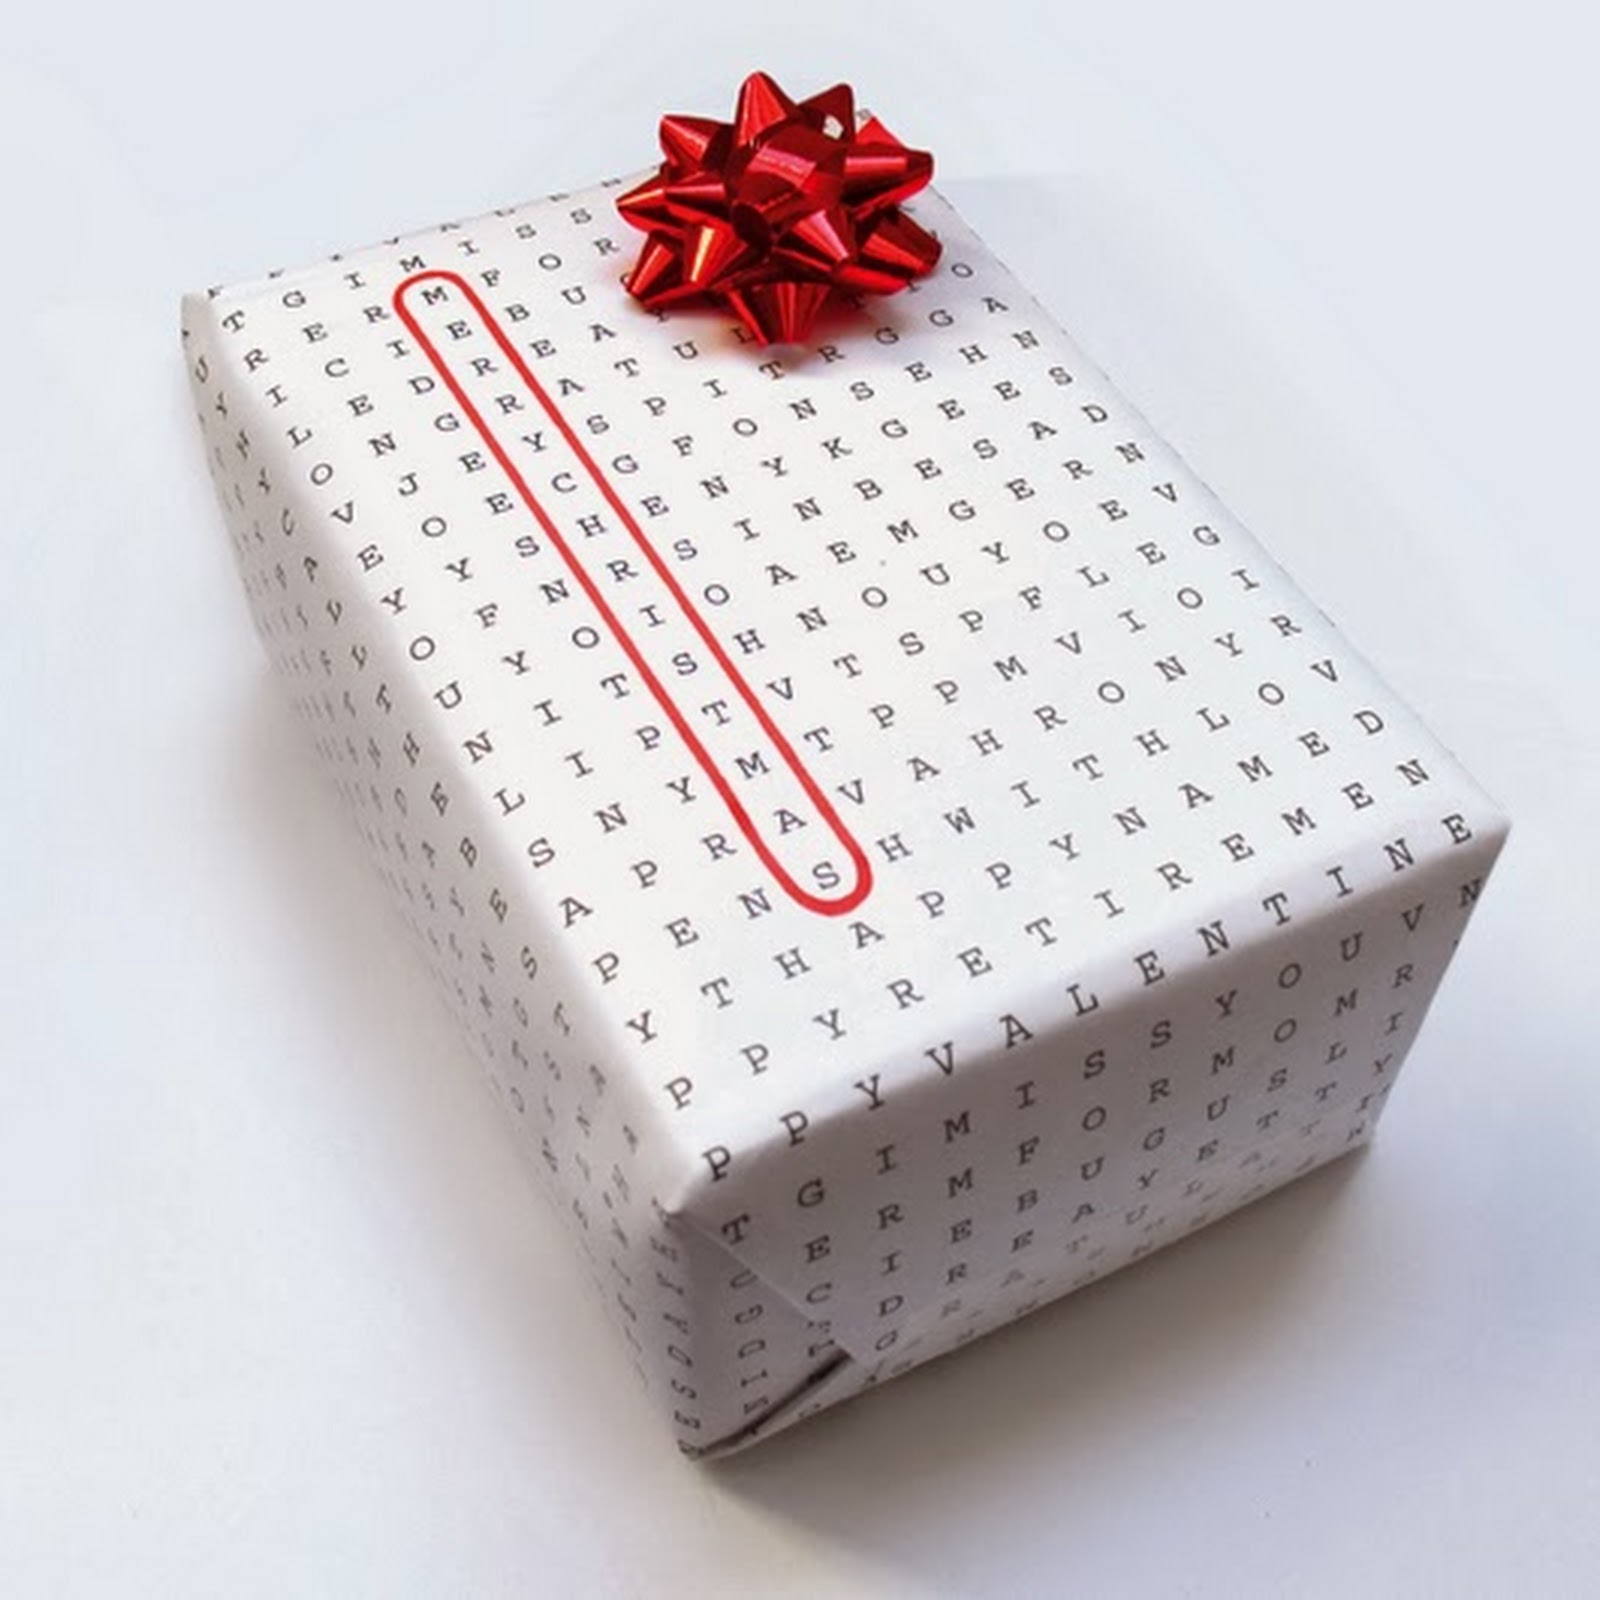 Modne słowo - design (i to co z nim związane) - papier do pakowania prezentów.